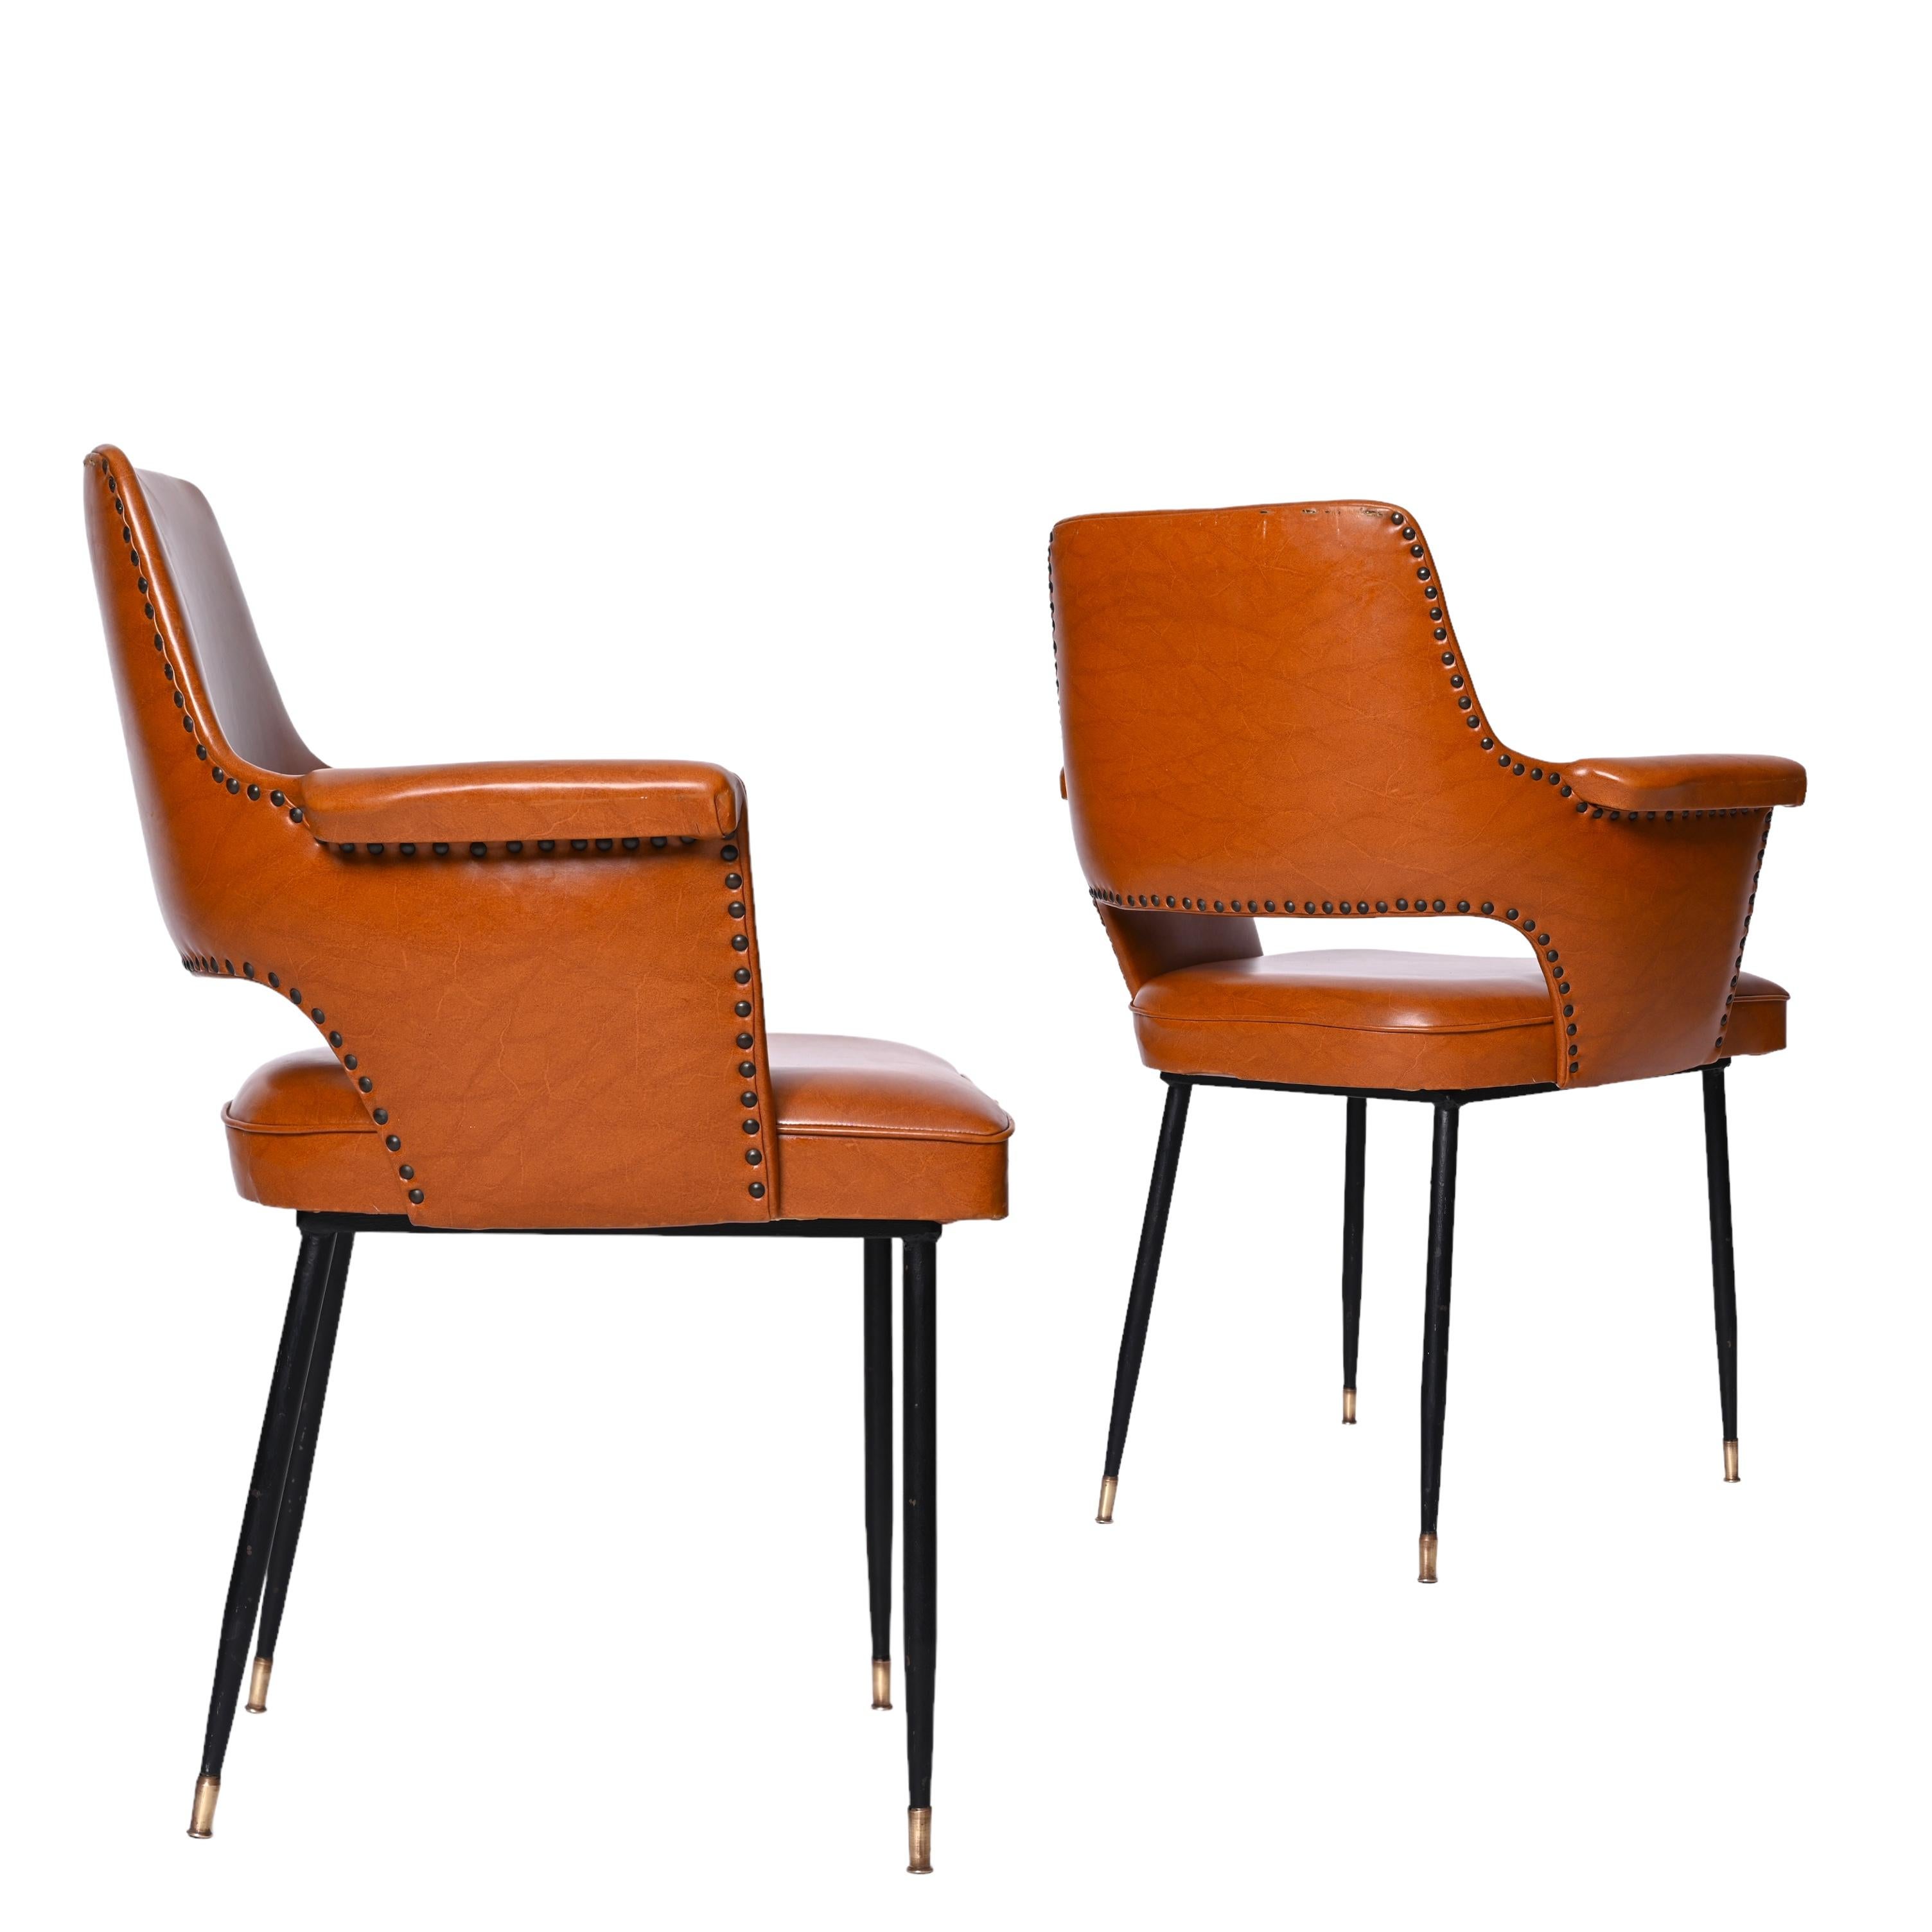 Merveilleuse paire de fauteuils en similicuir marron du milieu du siècle dernier. Ces pièces fantastiques ont été conçues en Italie dans les années 1950 et inspirées par le travail d'Andre Motte

Cette paire de fauteuils est fantastique comme en